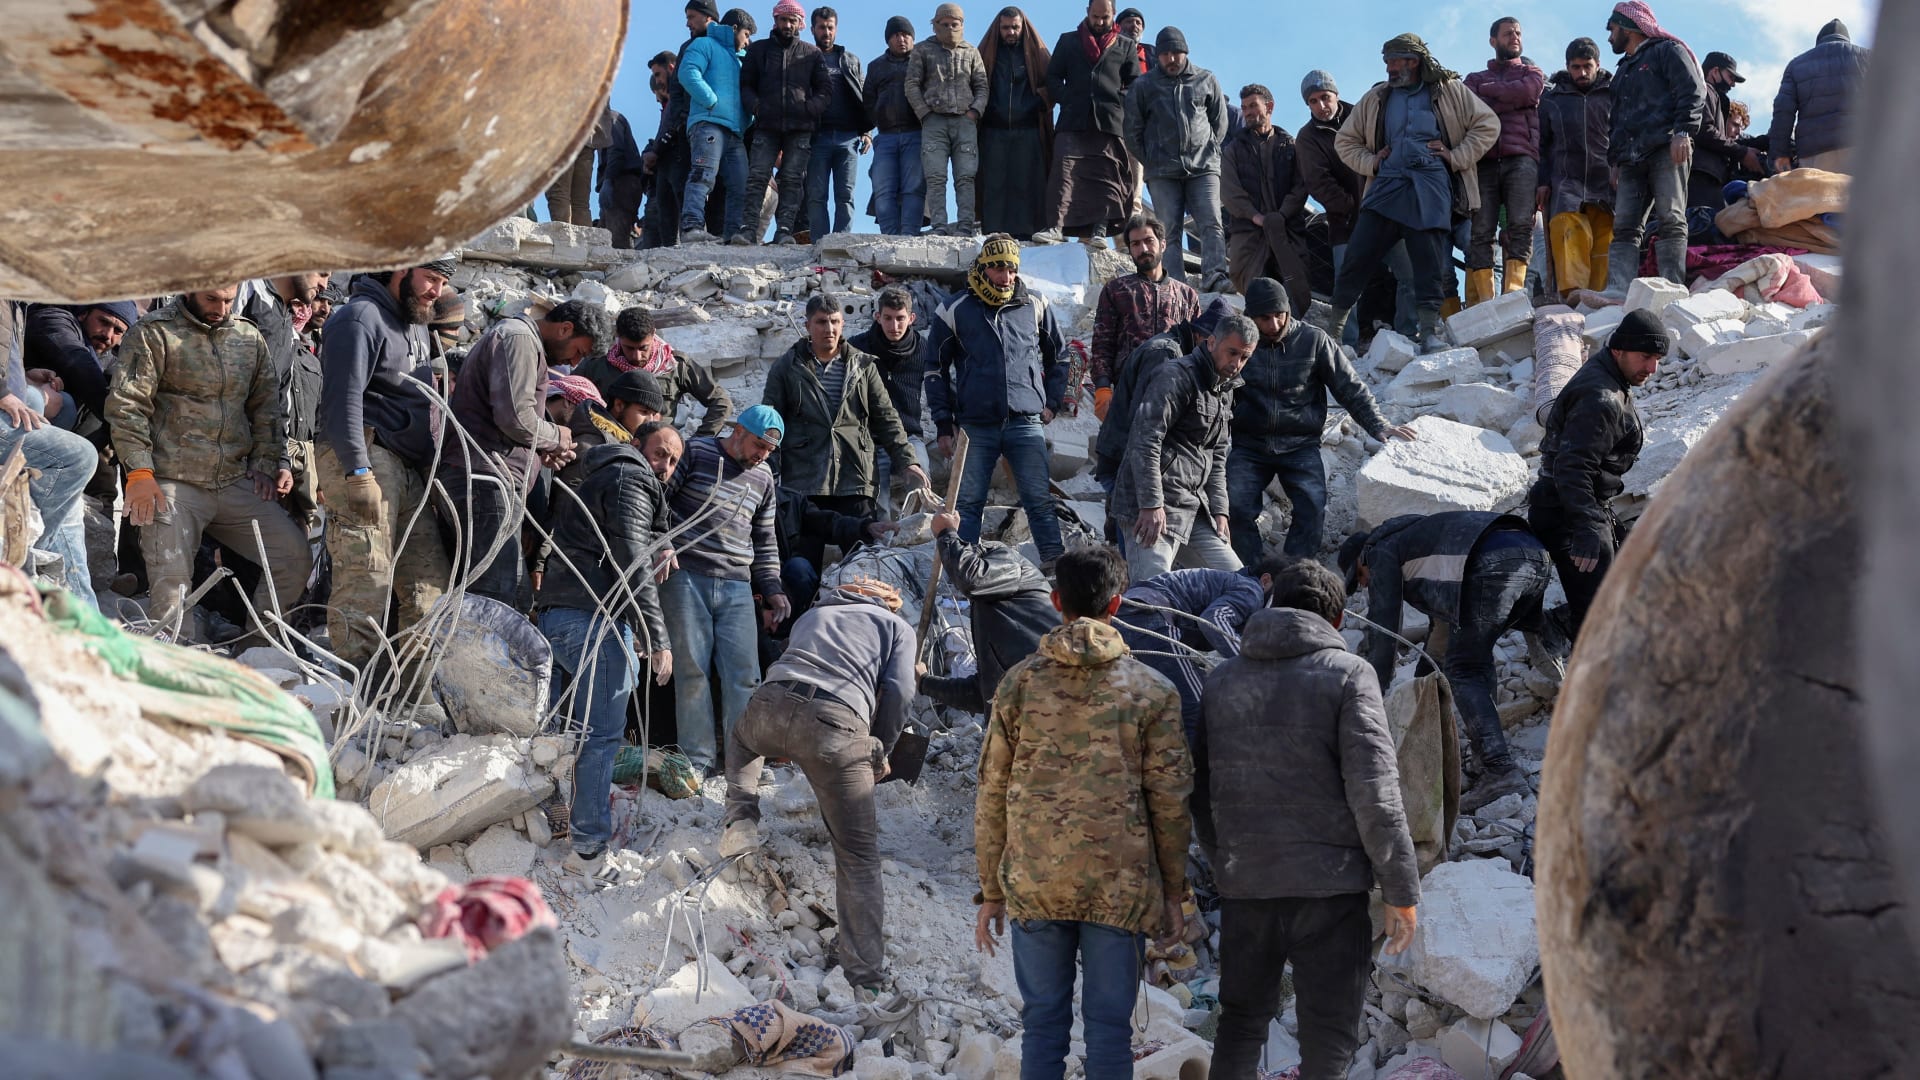  لجنة الإنقاذ الدولية تدعو لتقديم الدعم اللازم لسوريا وتركيا "قبل فوات الأوان"